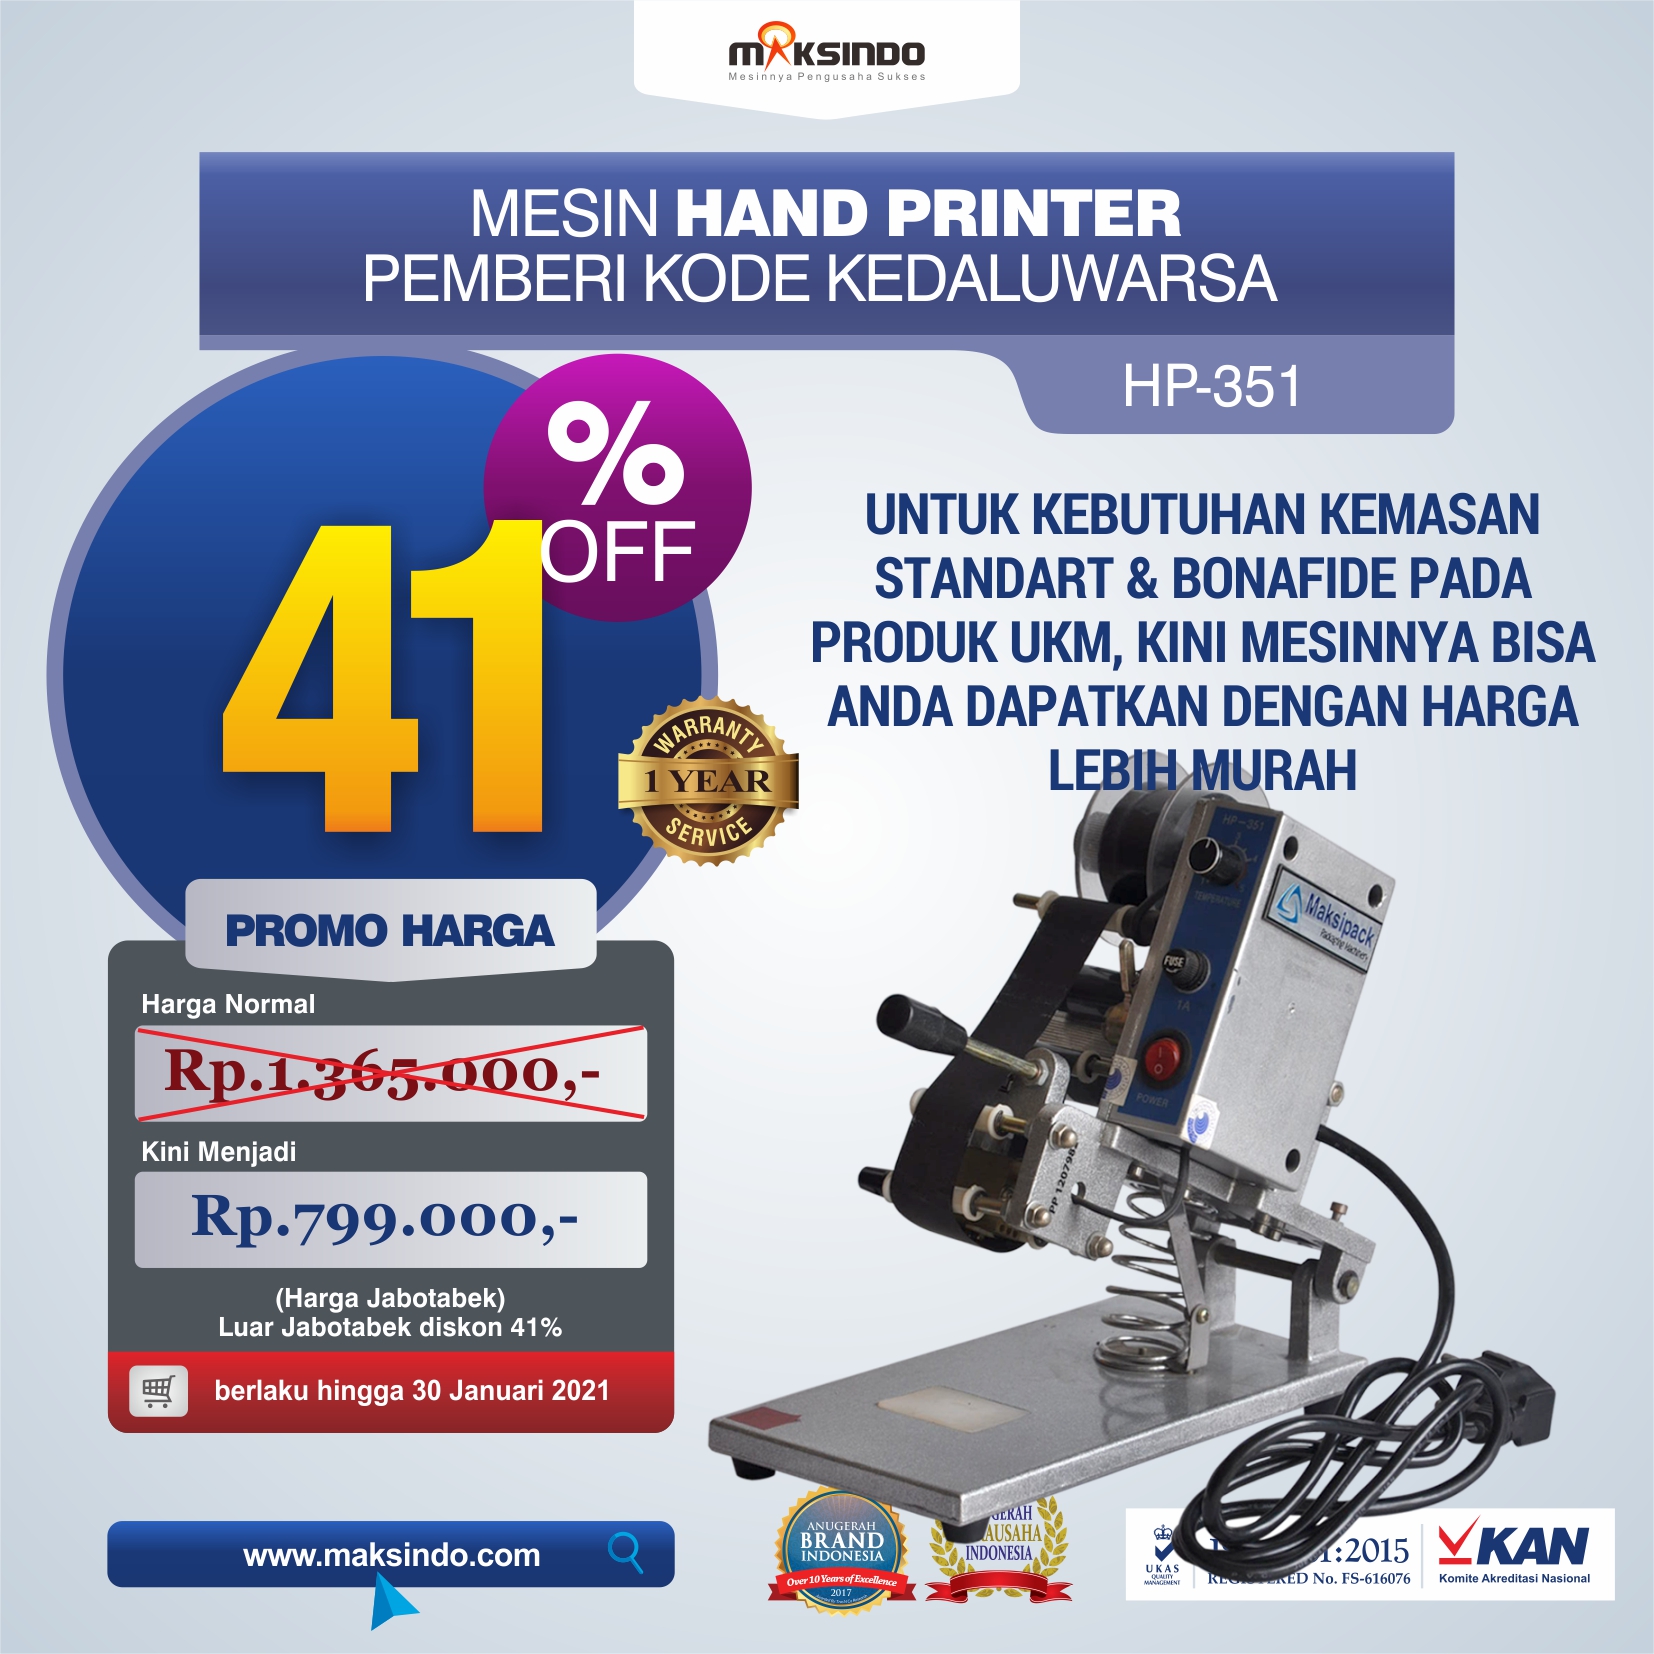 Jual Mesin Hand Printer (Pencetak Kedaluwarsa) di Semarang